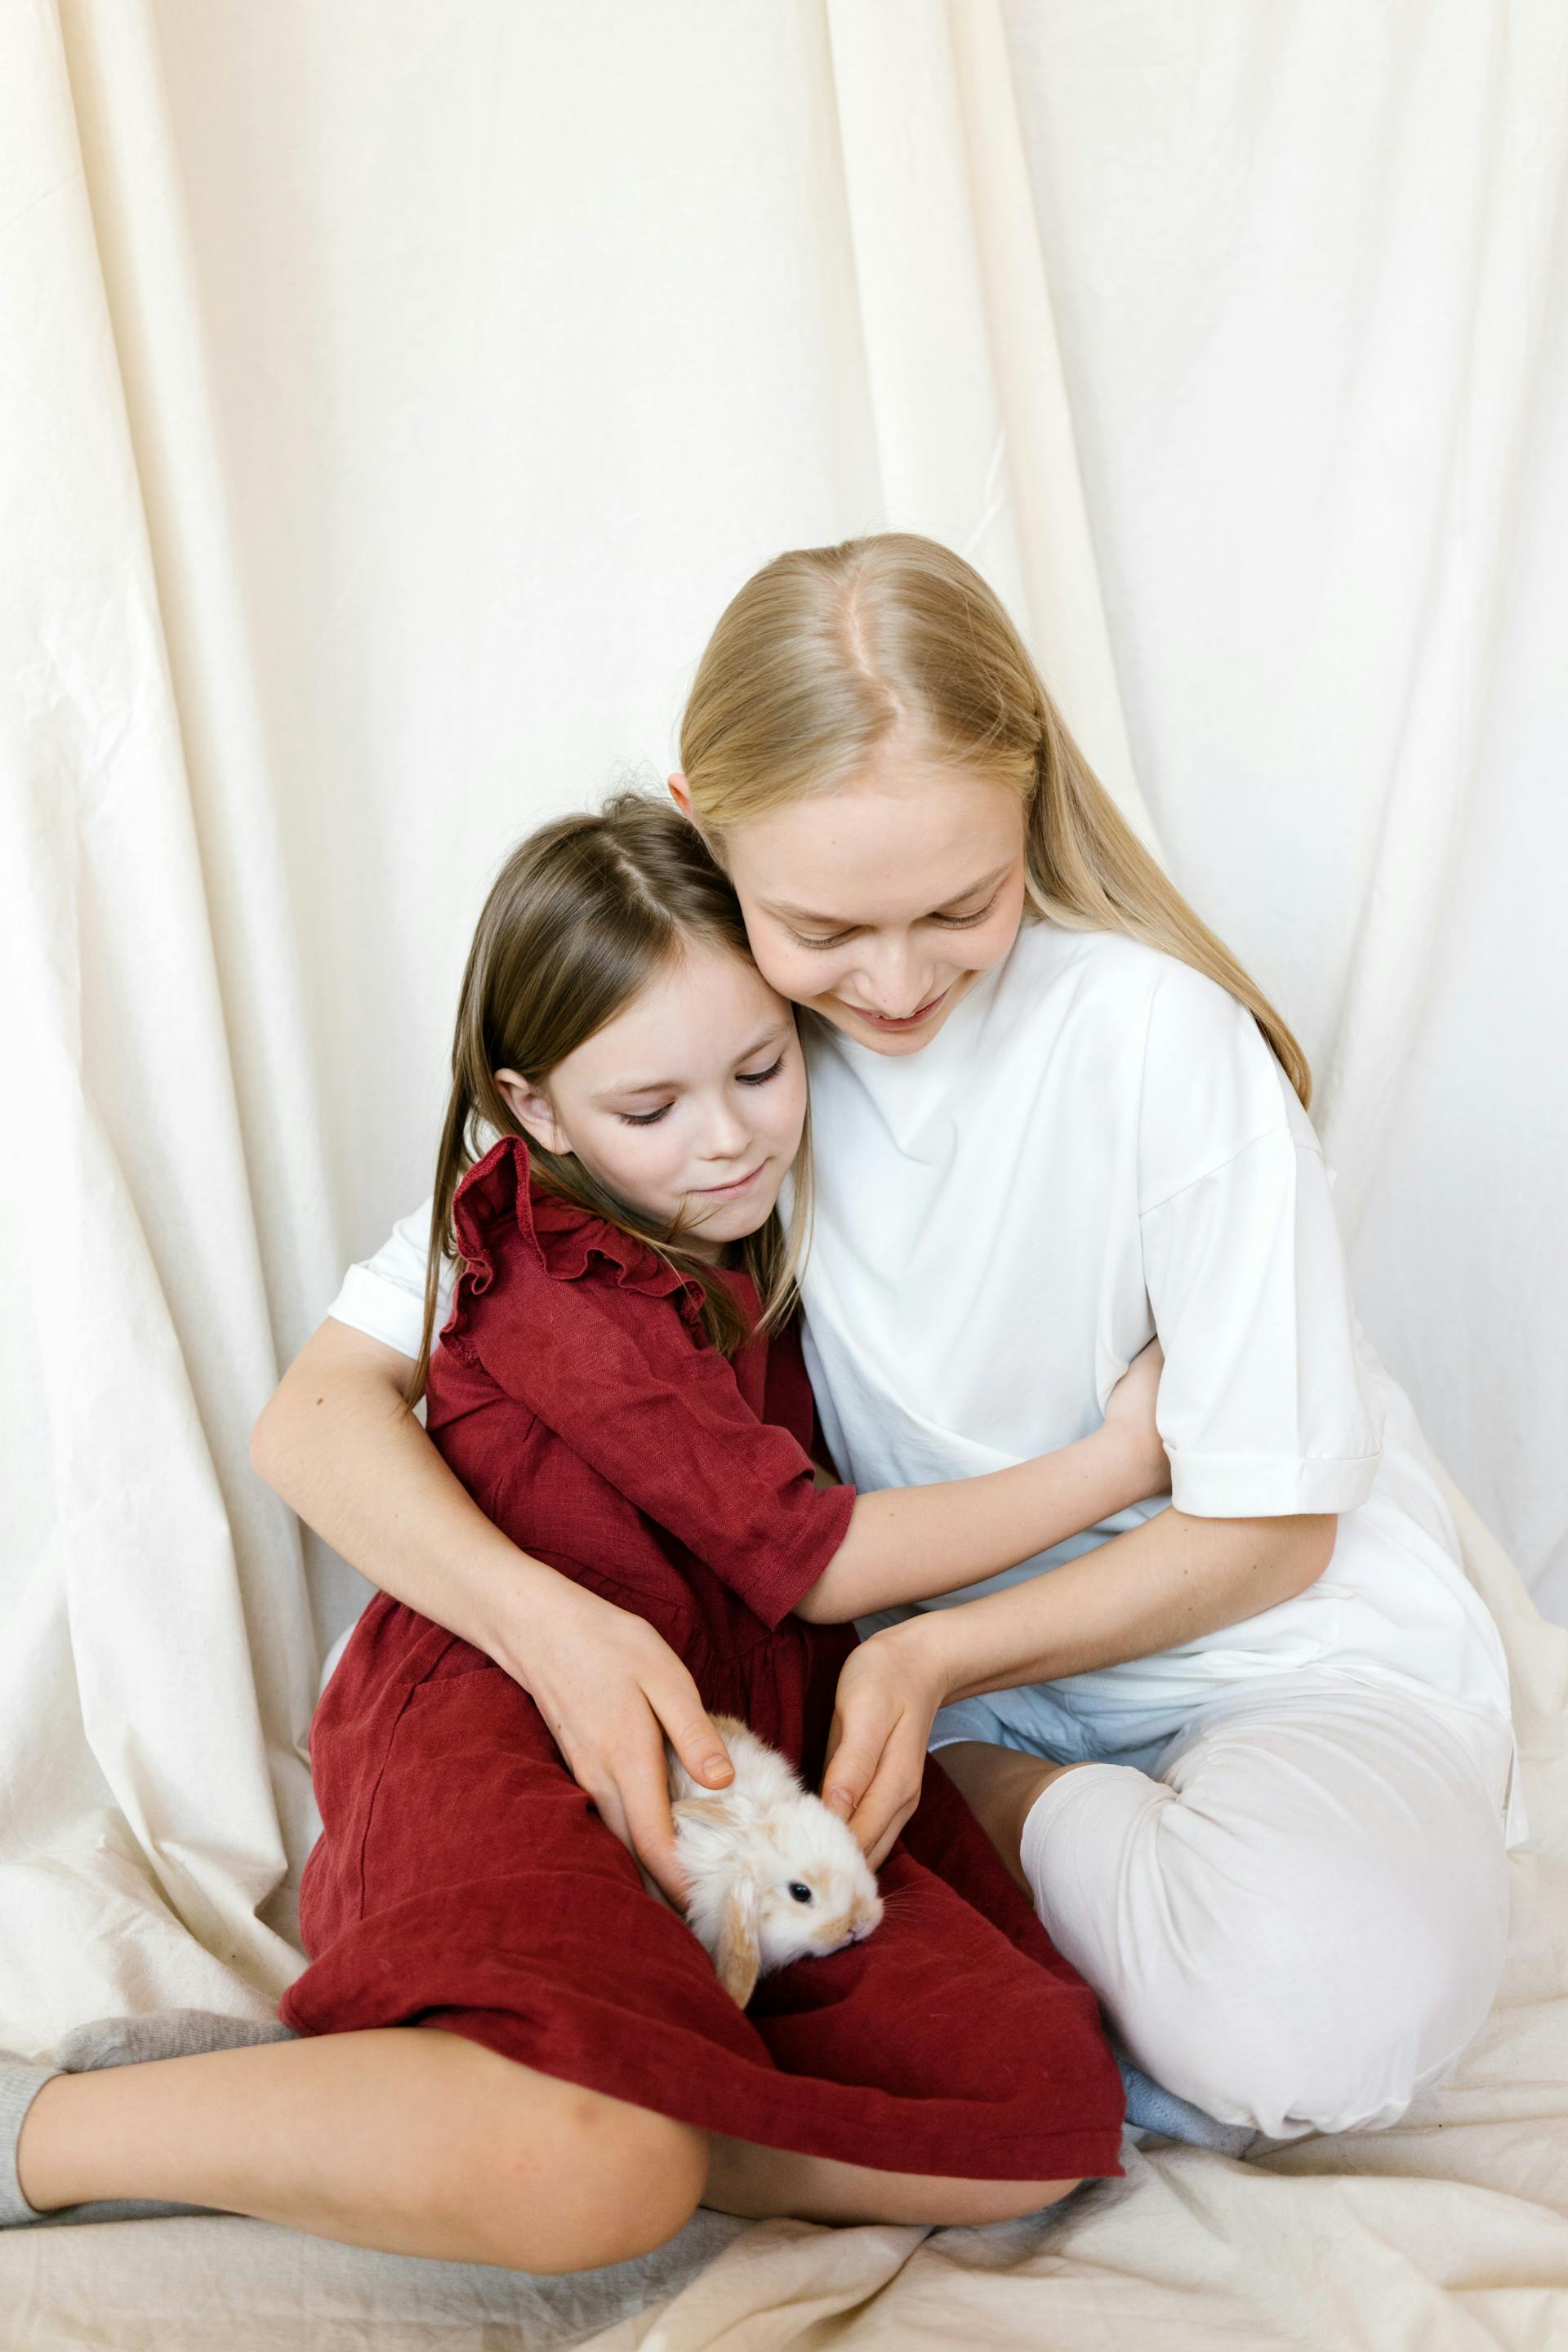 Ein junges Mädchen, das seine Mutter umarmt, während es sich ein Kaninchen ansieht | Quelle: Pexels